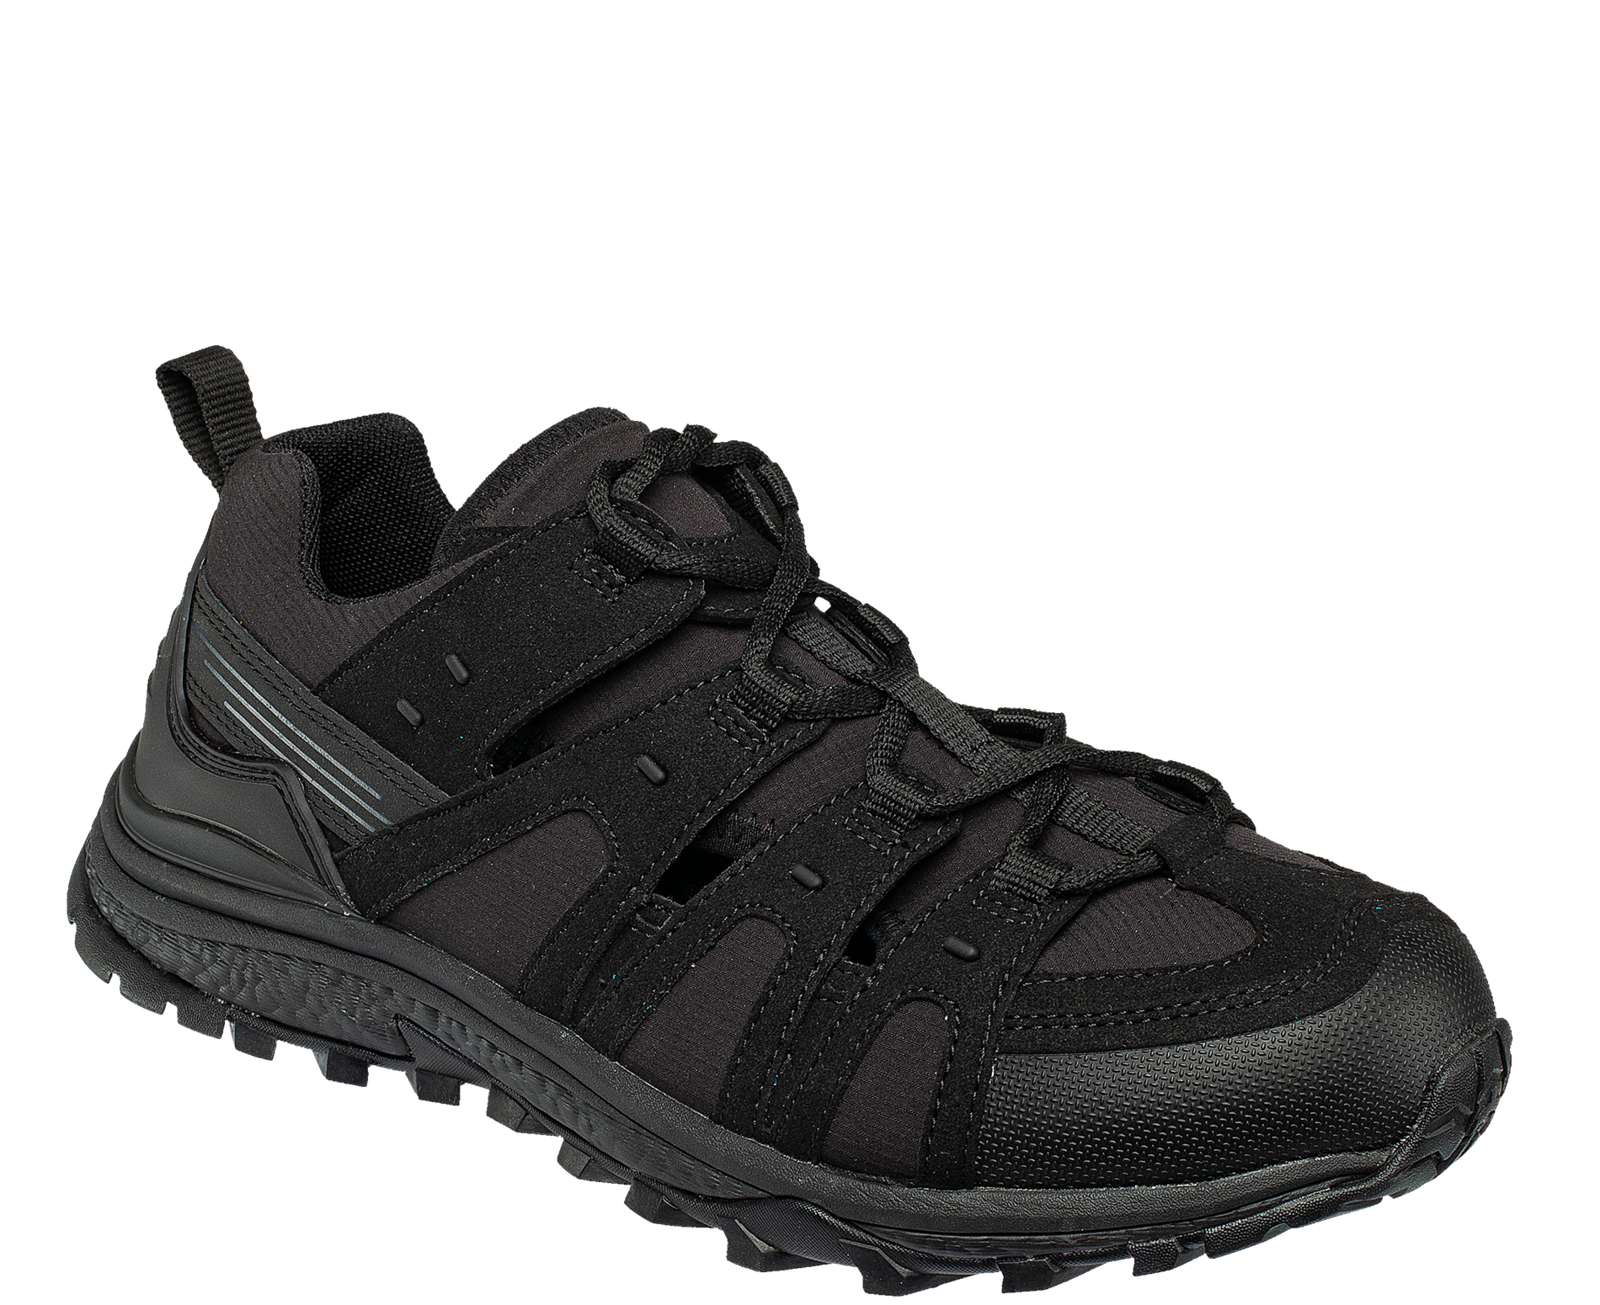 Pracovné sandále Bennon Amigo O1 čierne - veľkosť: 49, farba: čierna